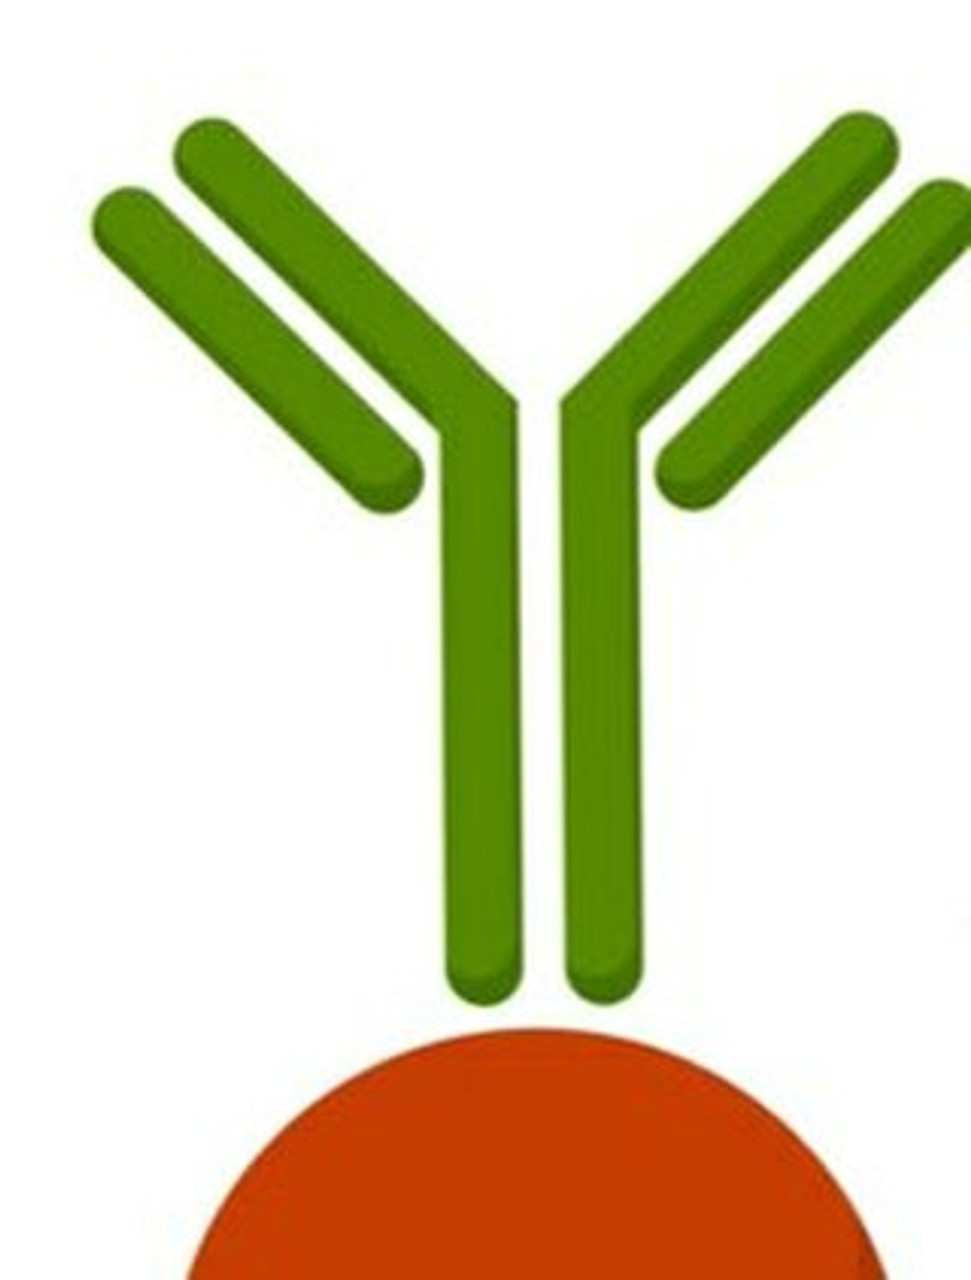 Anti-CES3 antibody